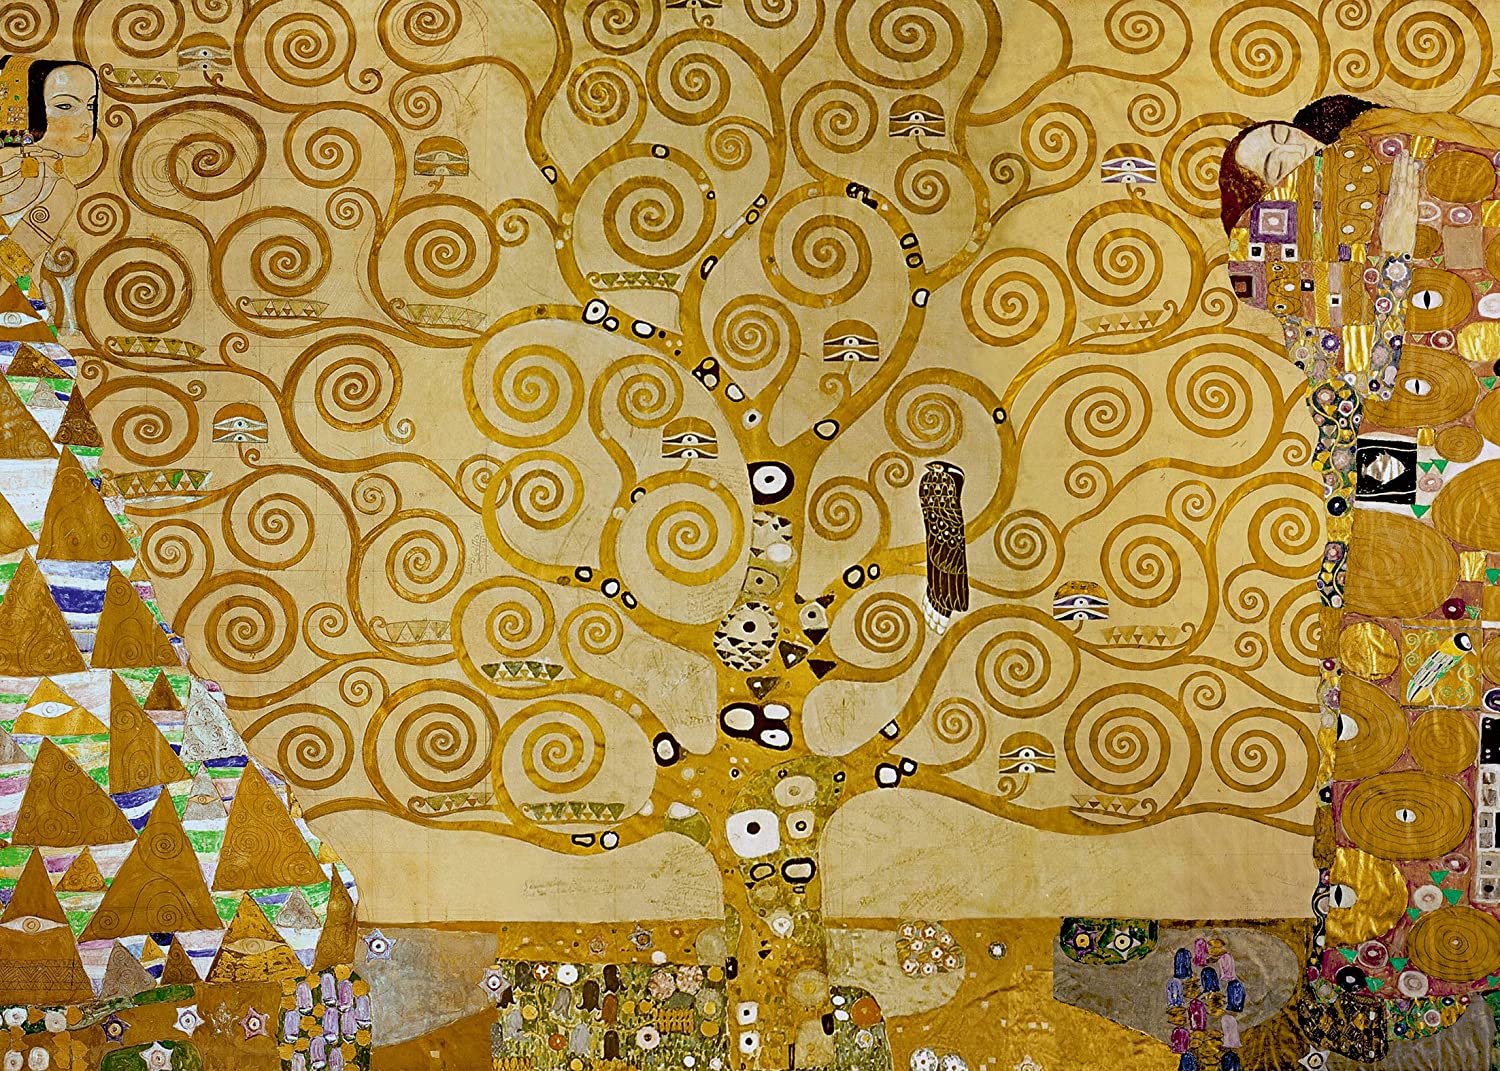 Puzzle d'Art 1000 pièces Gustav Klimt : L'arbre de vie